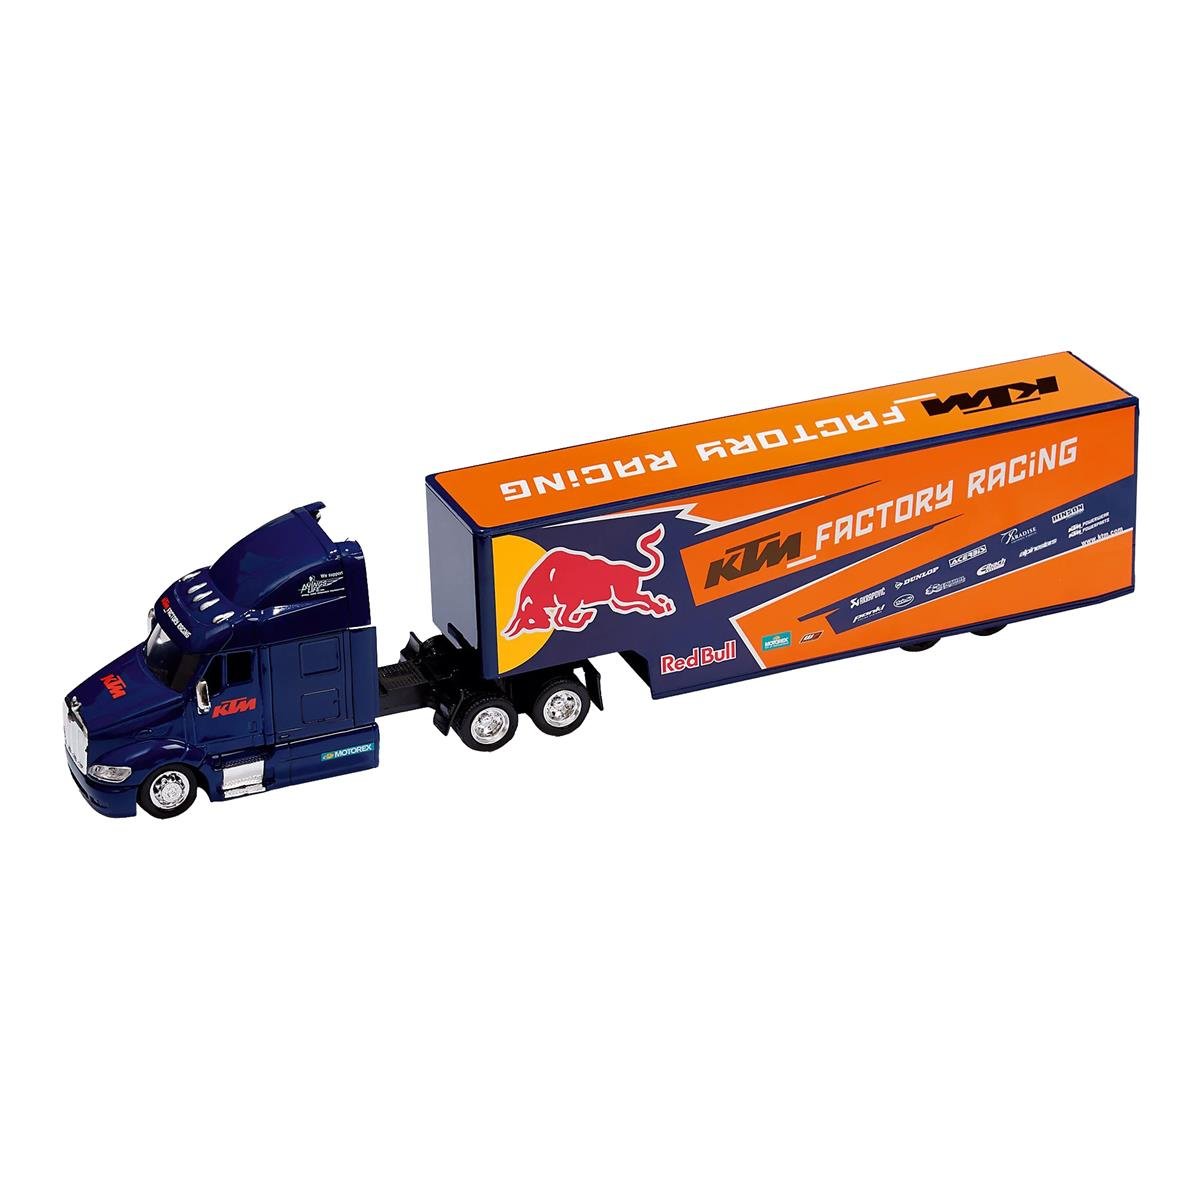 Red Bull Truckmodell  KTM Factory Racing Team, 1:43